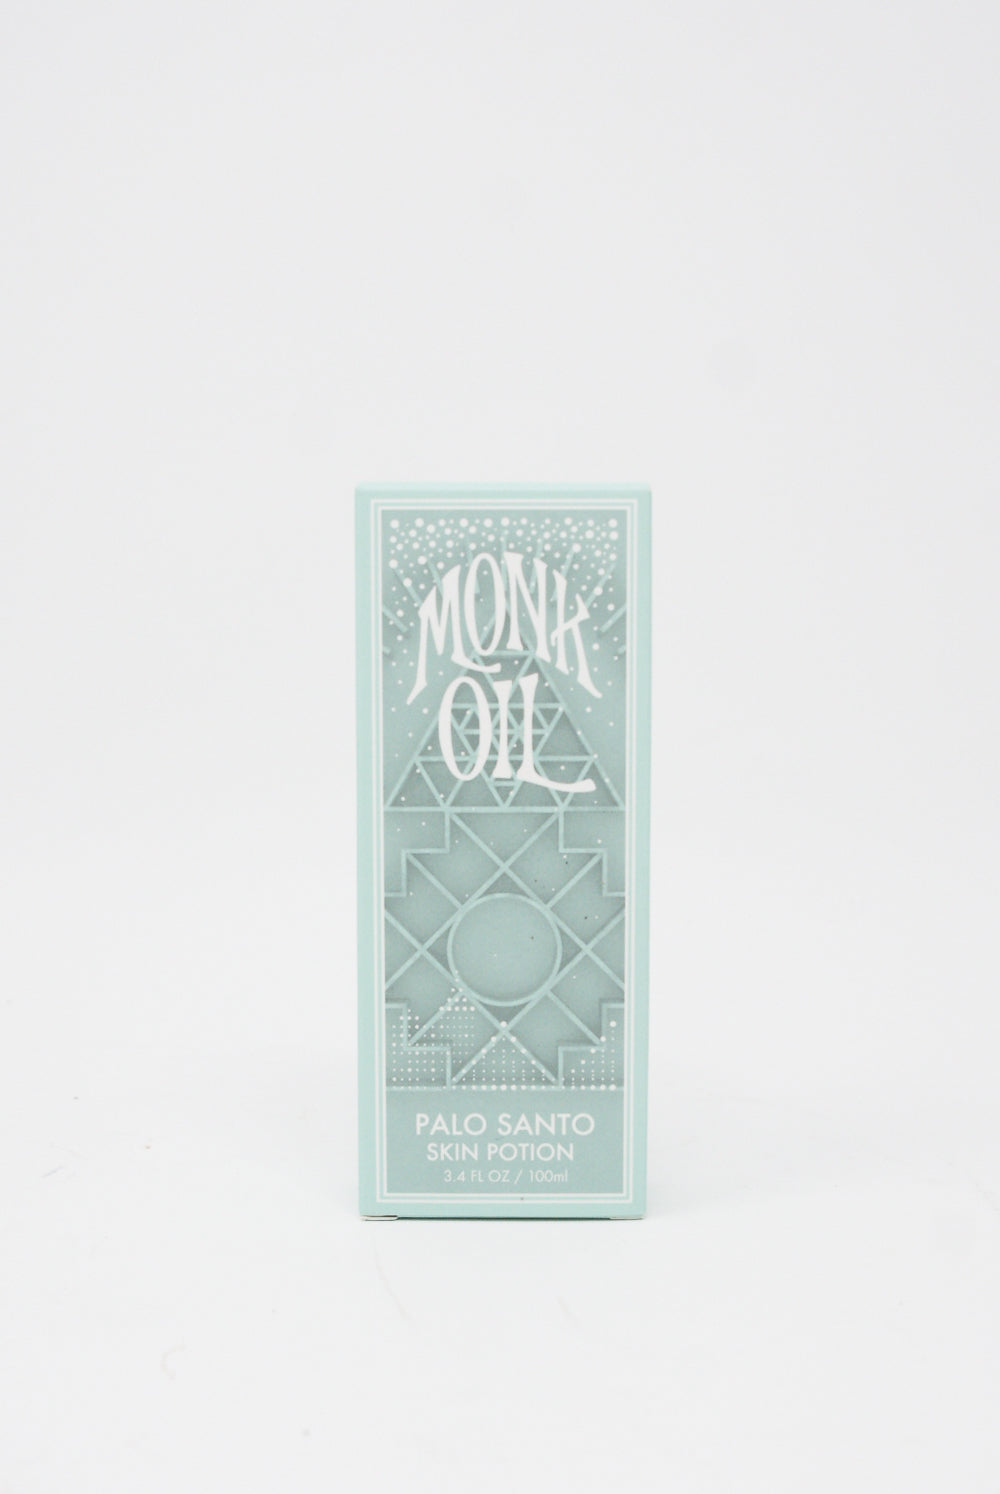 Monk Oil - Skin Potion in Palo Santo